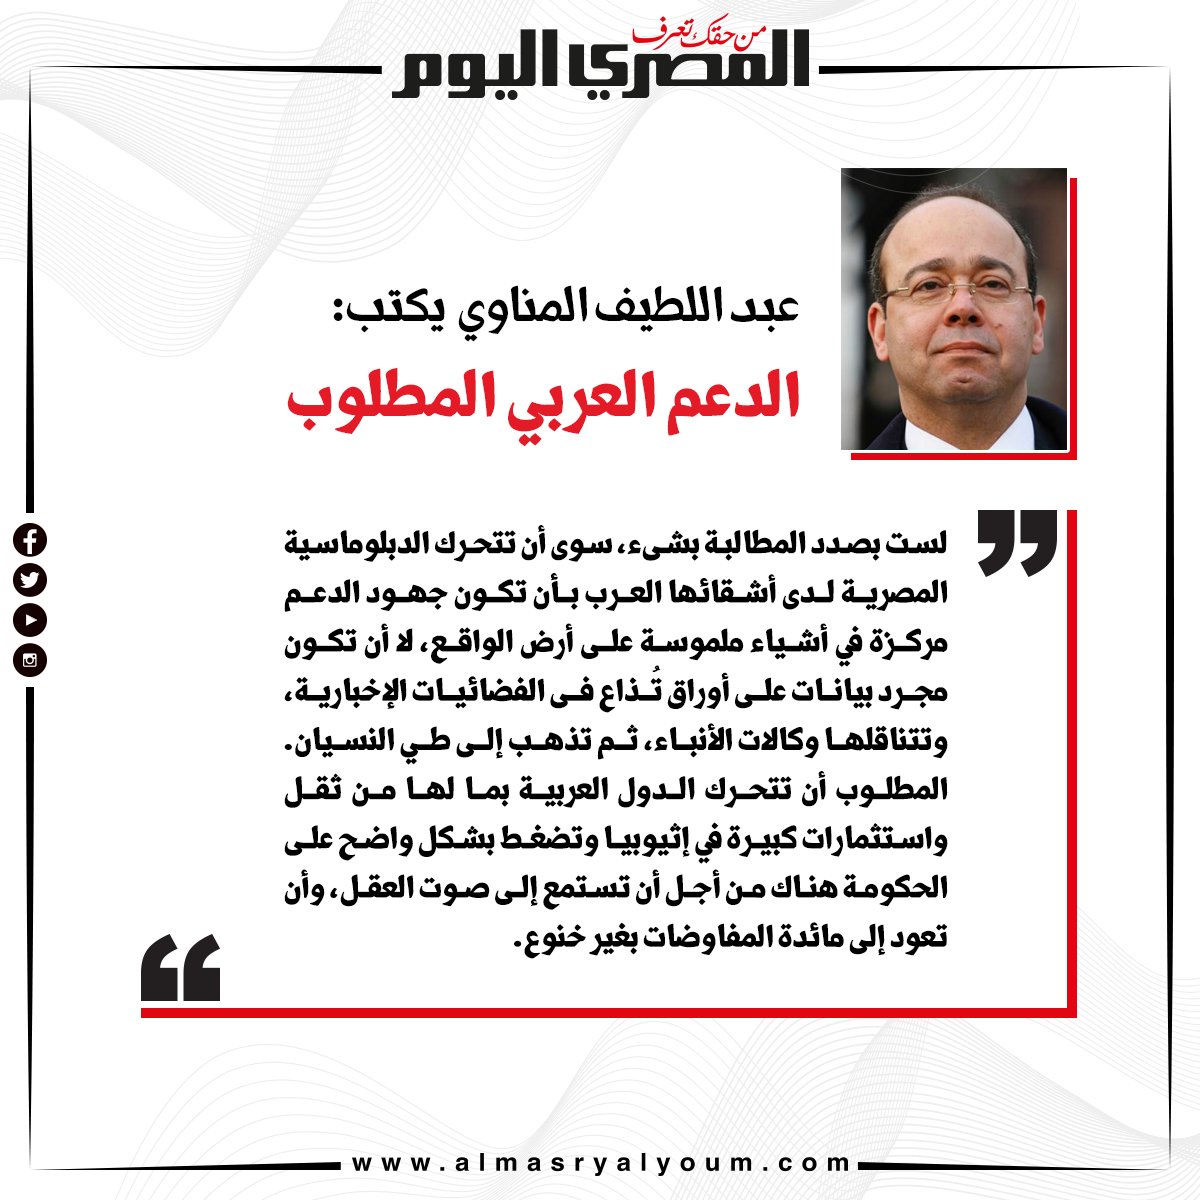 عبد اللطيف المناوي يكتب الدعم العربي المطلوب